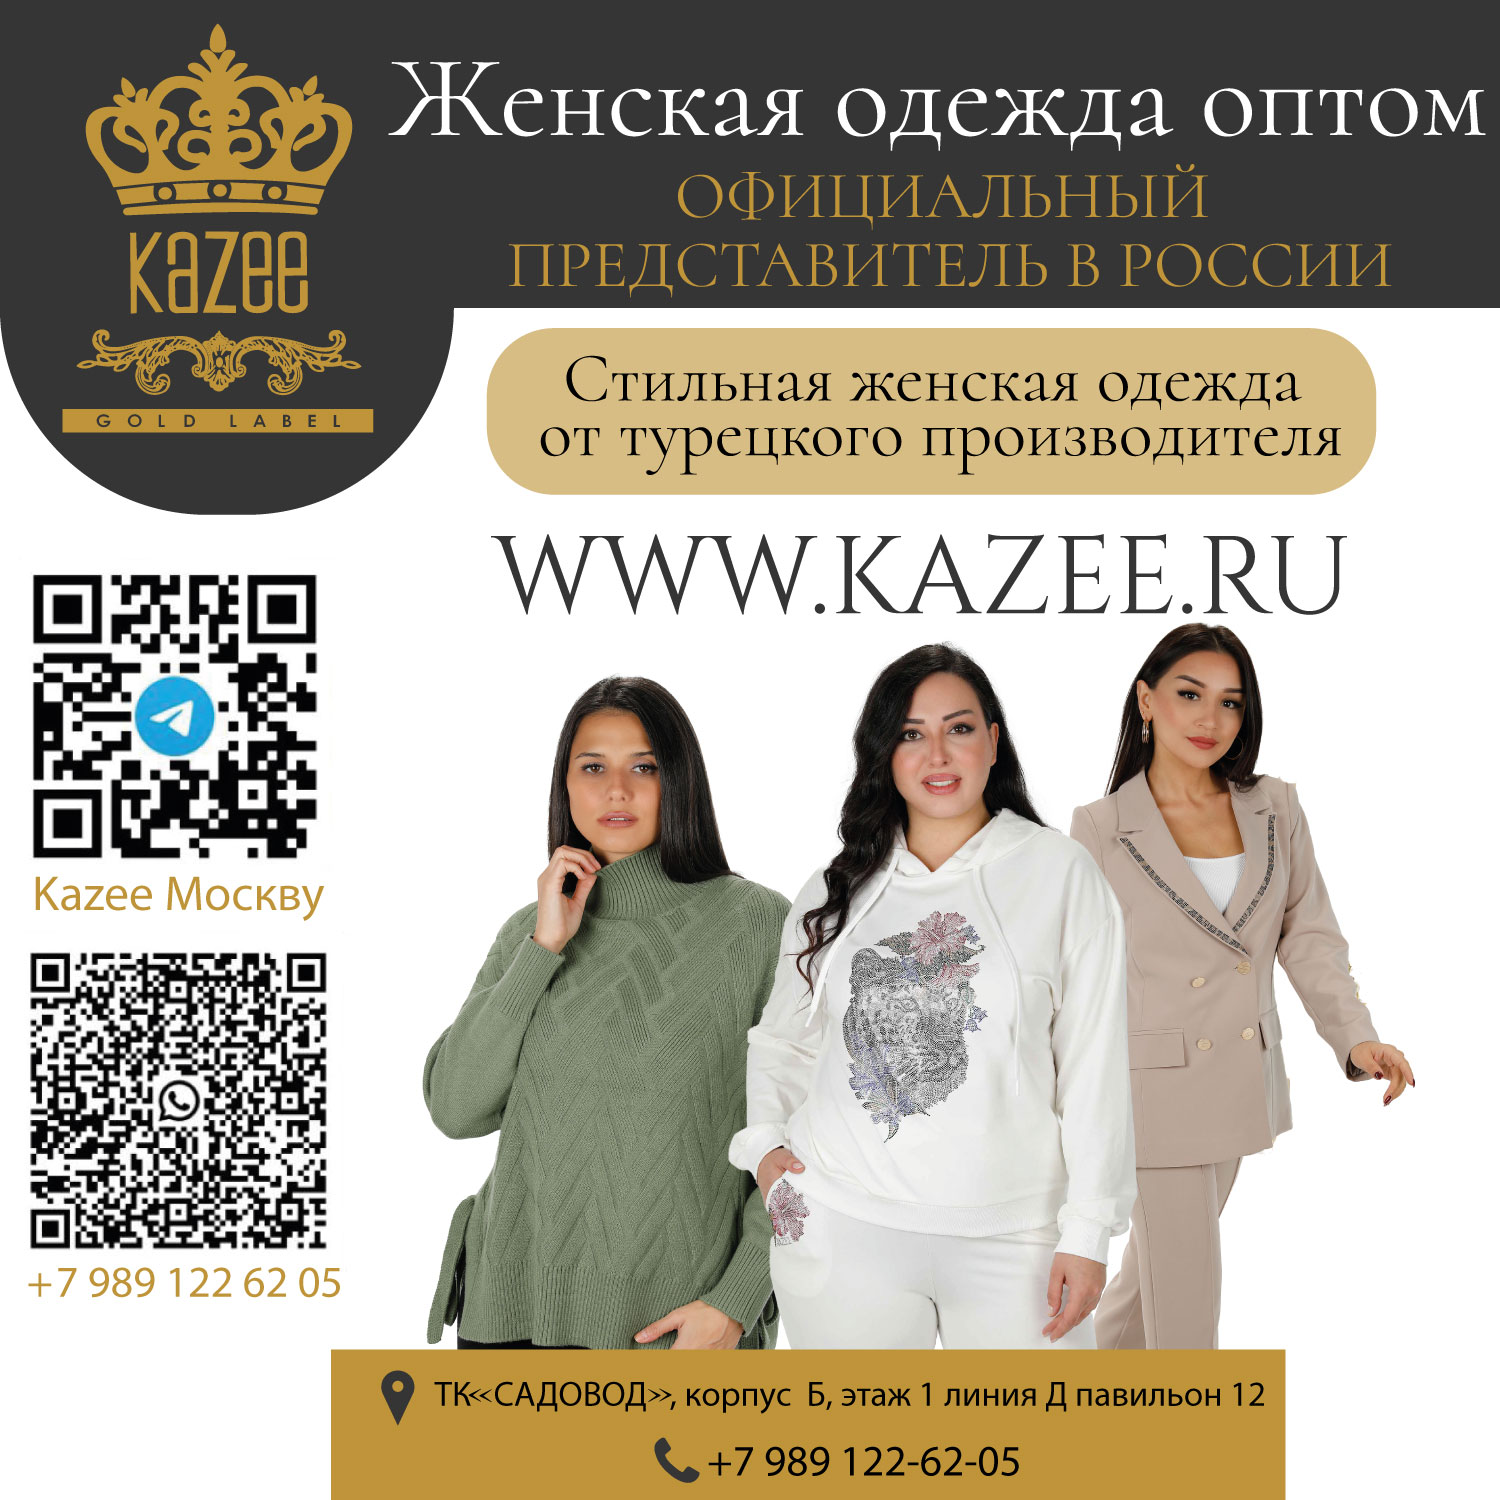 نماینده رسمی فروشگاه KAZEE در روسیه